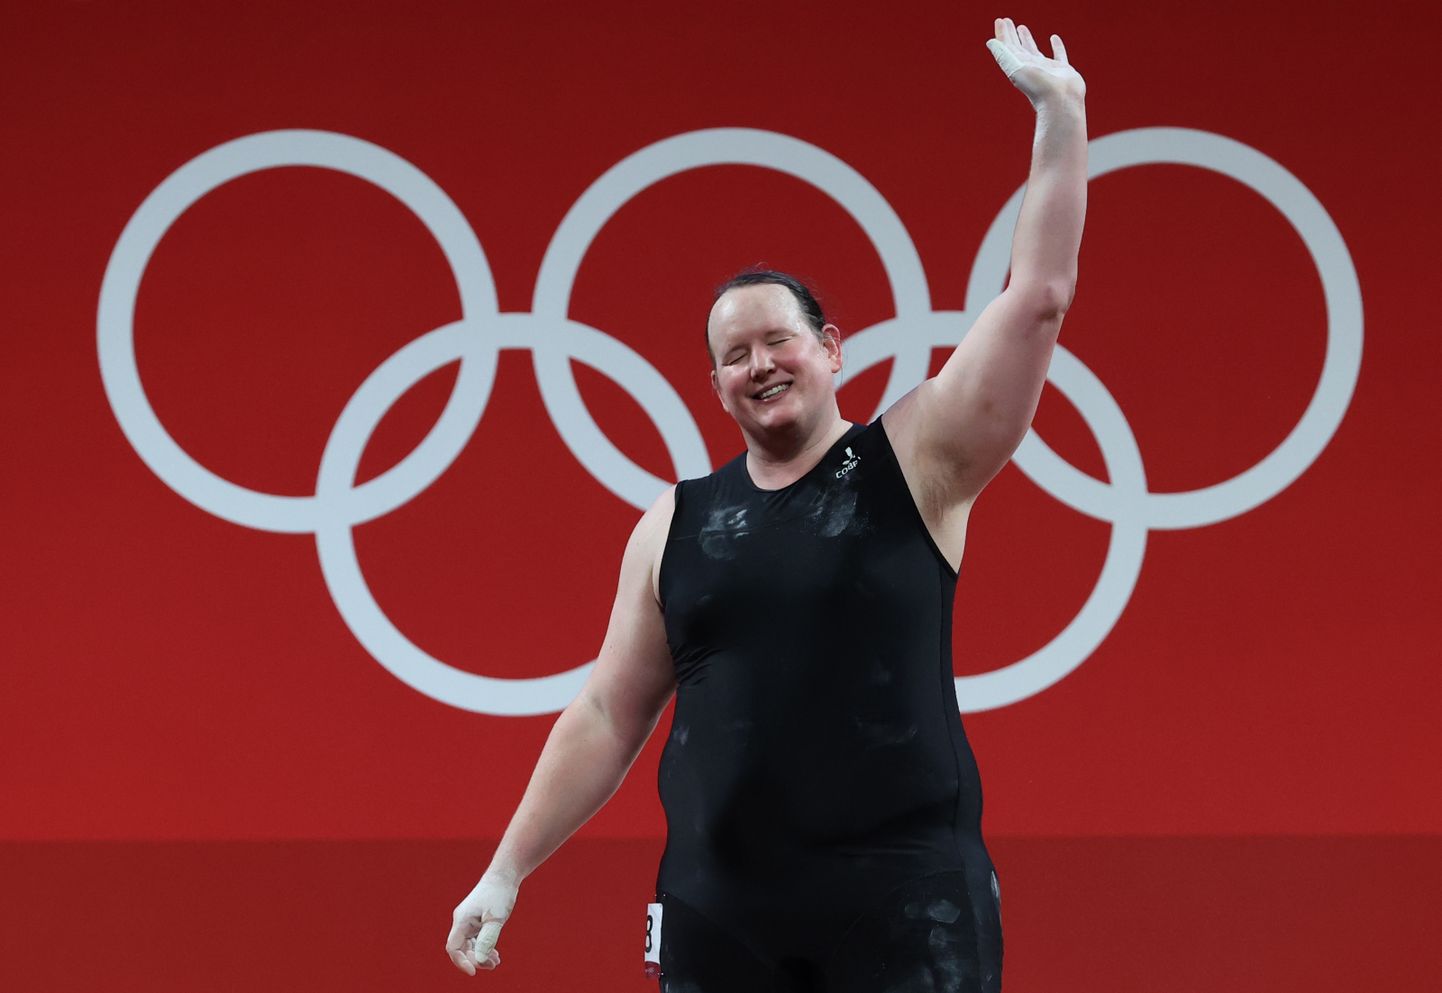 Лаурель Хаббард - первая женщина-трансгендер в истории Олимпийских игр.